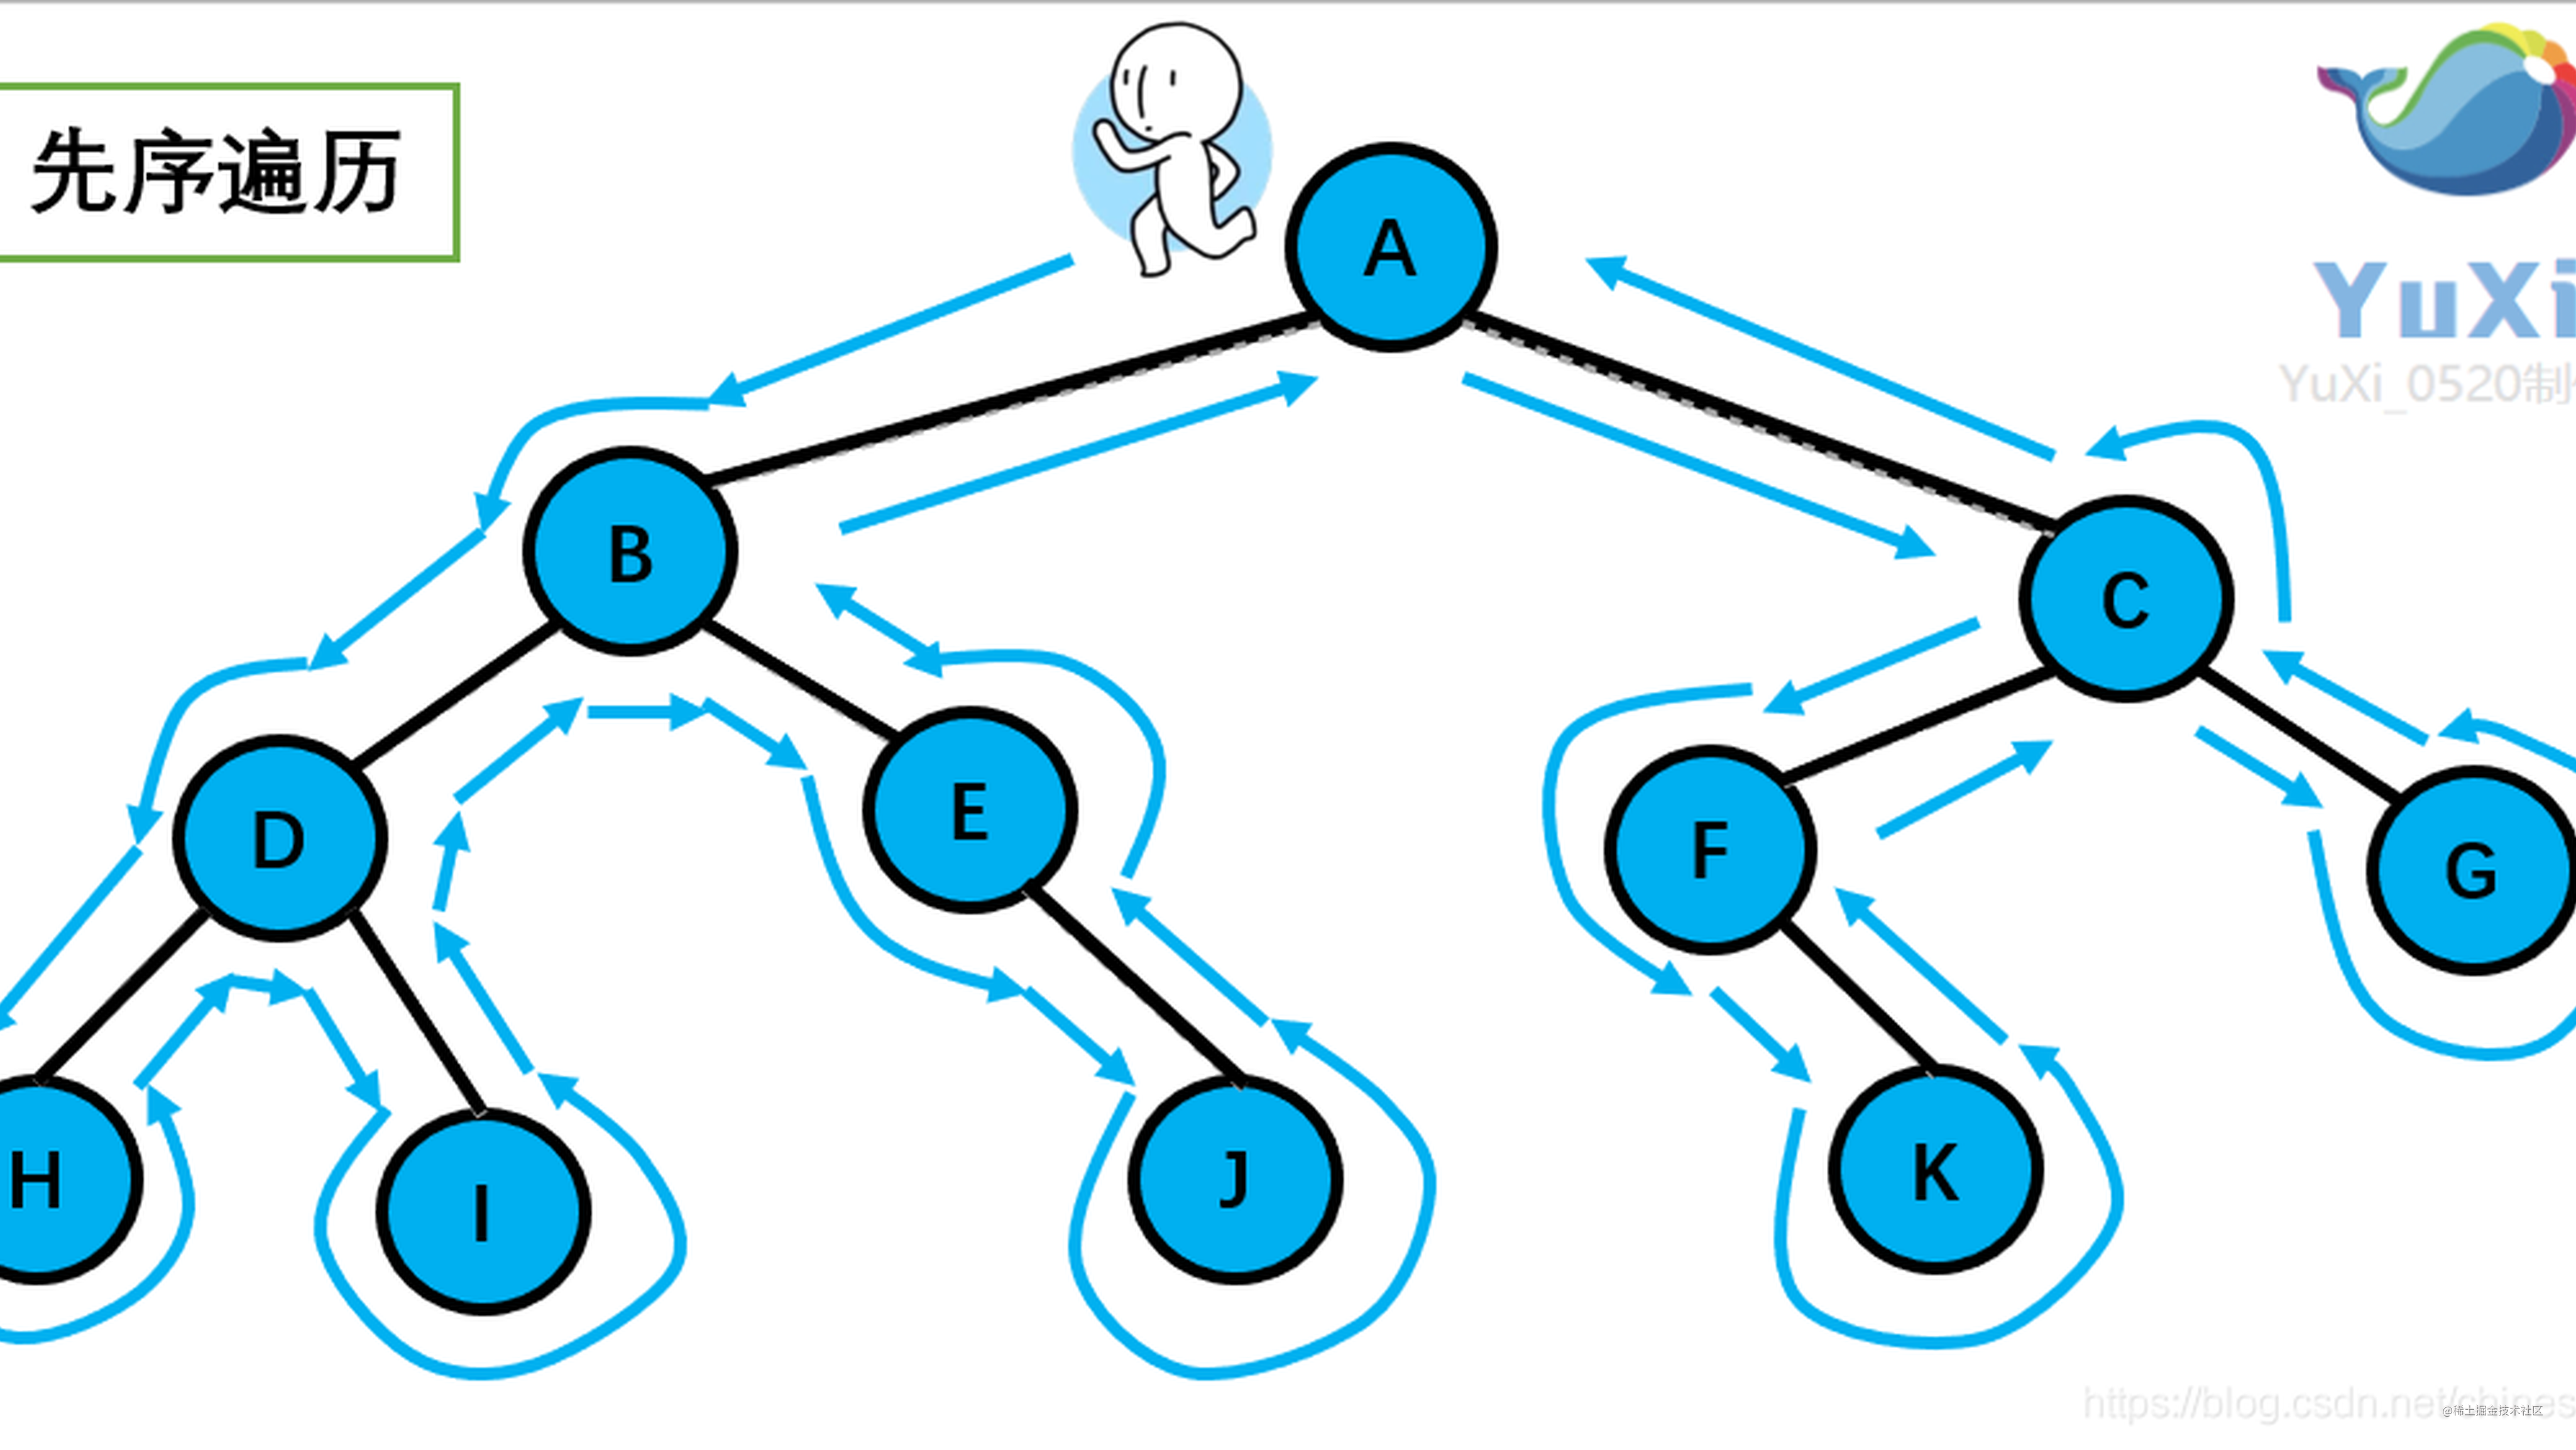 【图解数据结构】树和二叉树全面总结